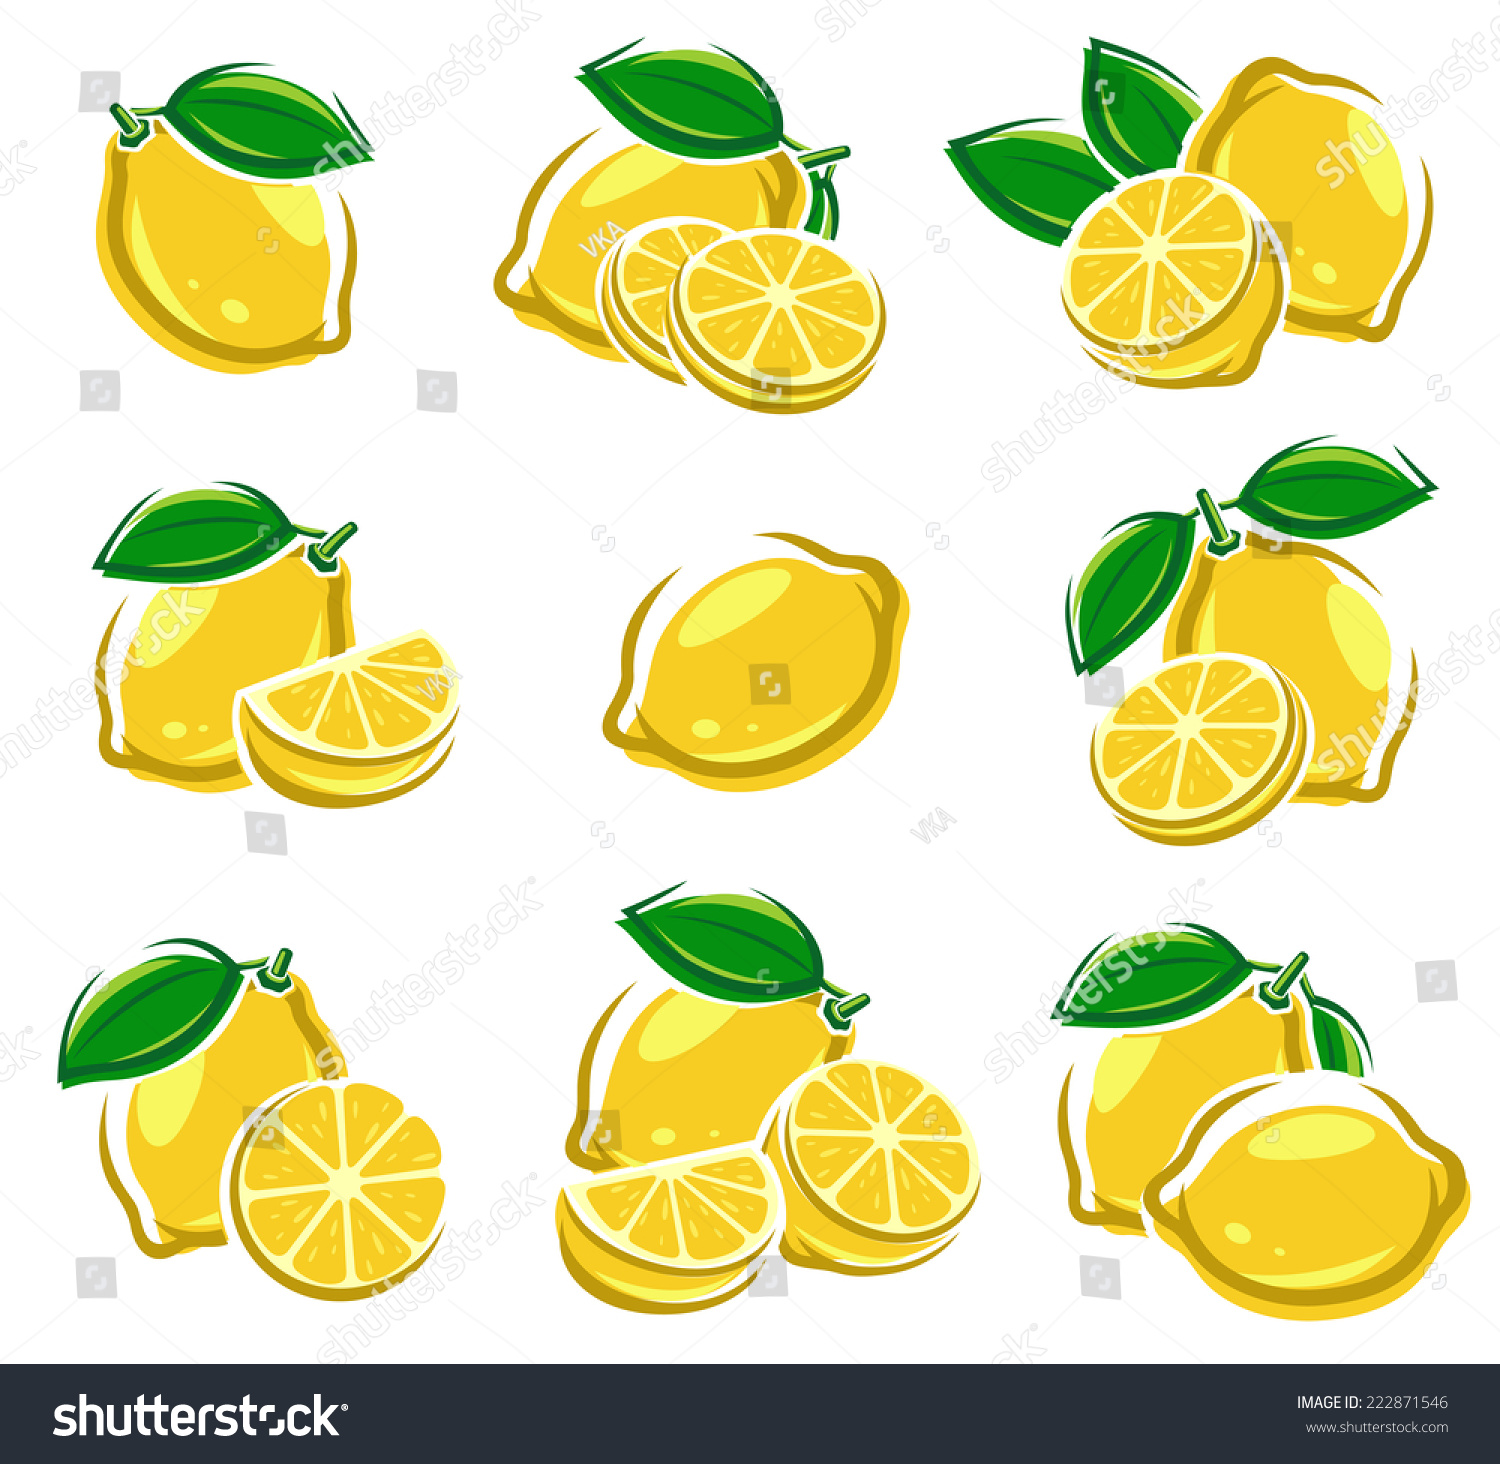 Lemon Set. Vector - 222871546 : Shutterstock